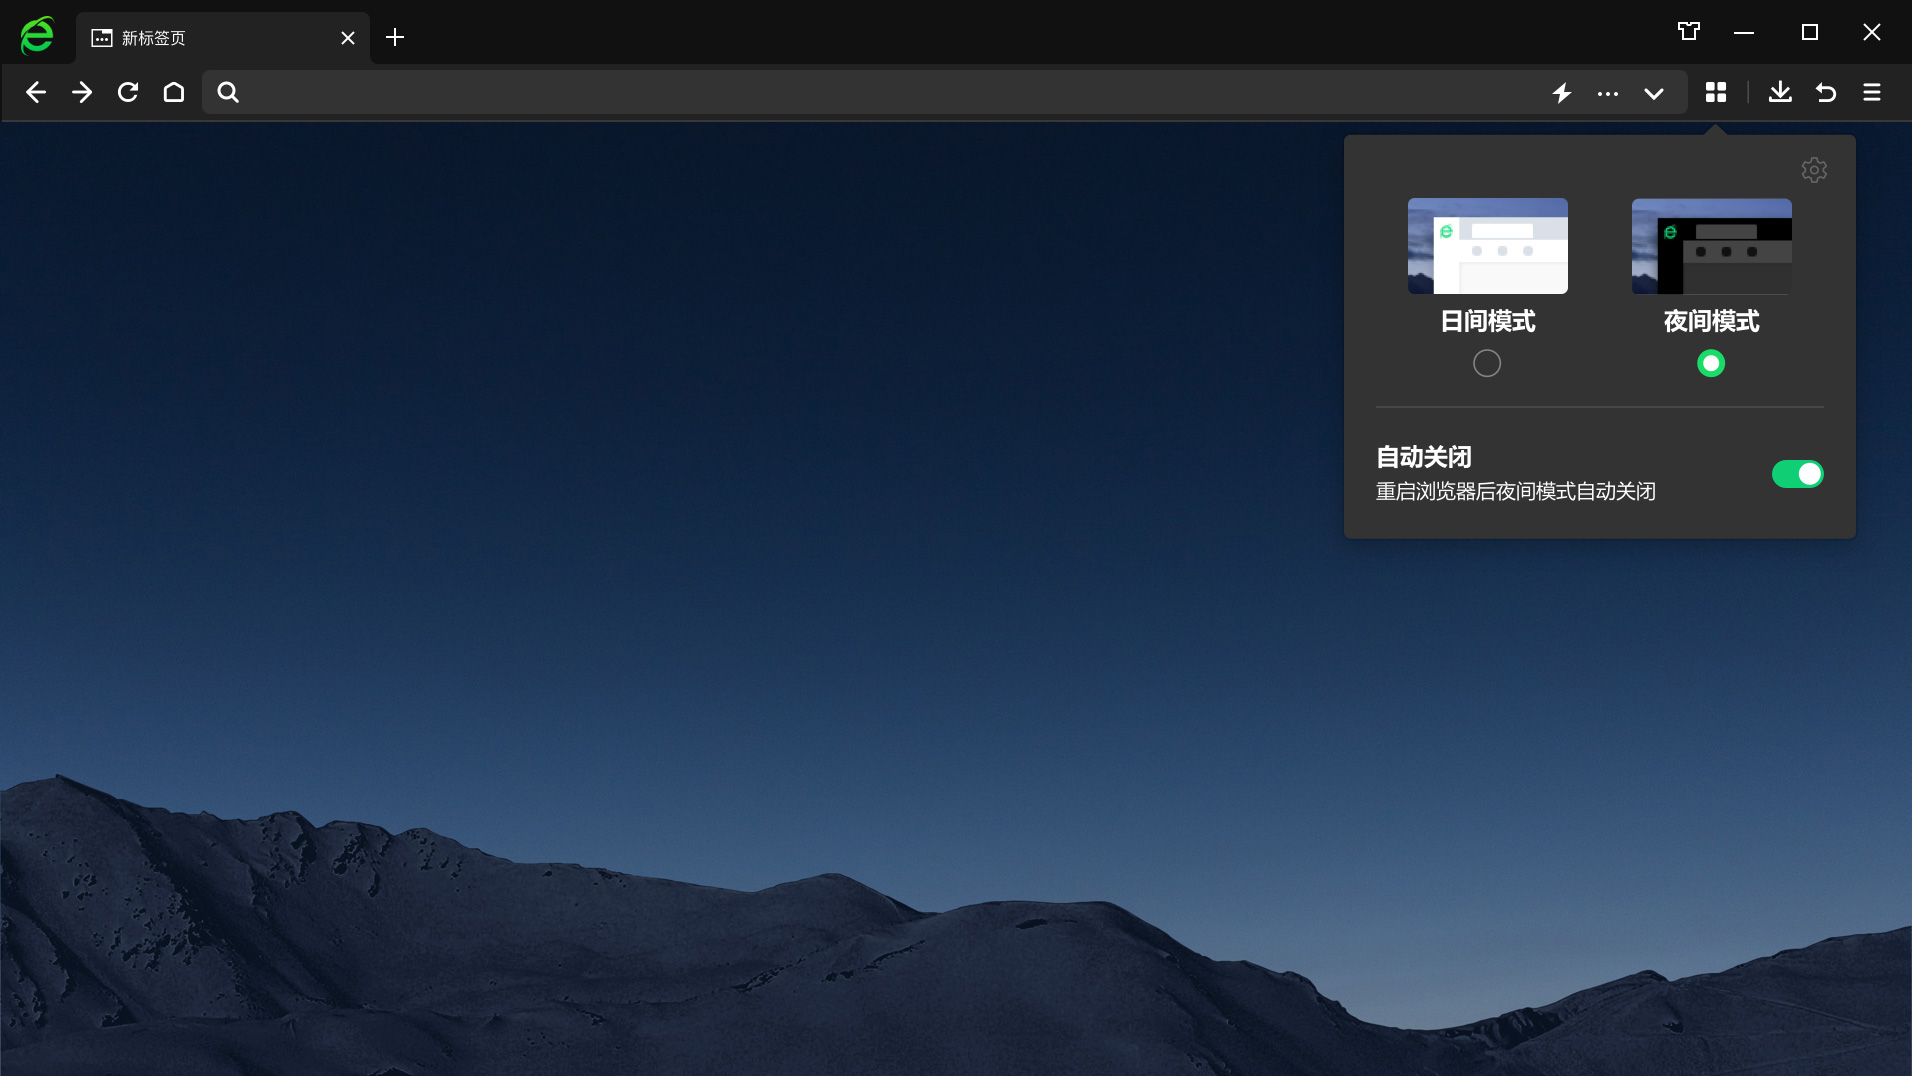 360瀏覽器PC端最新版 第1張圖片